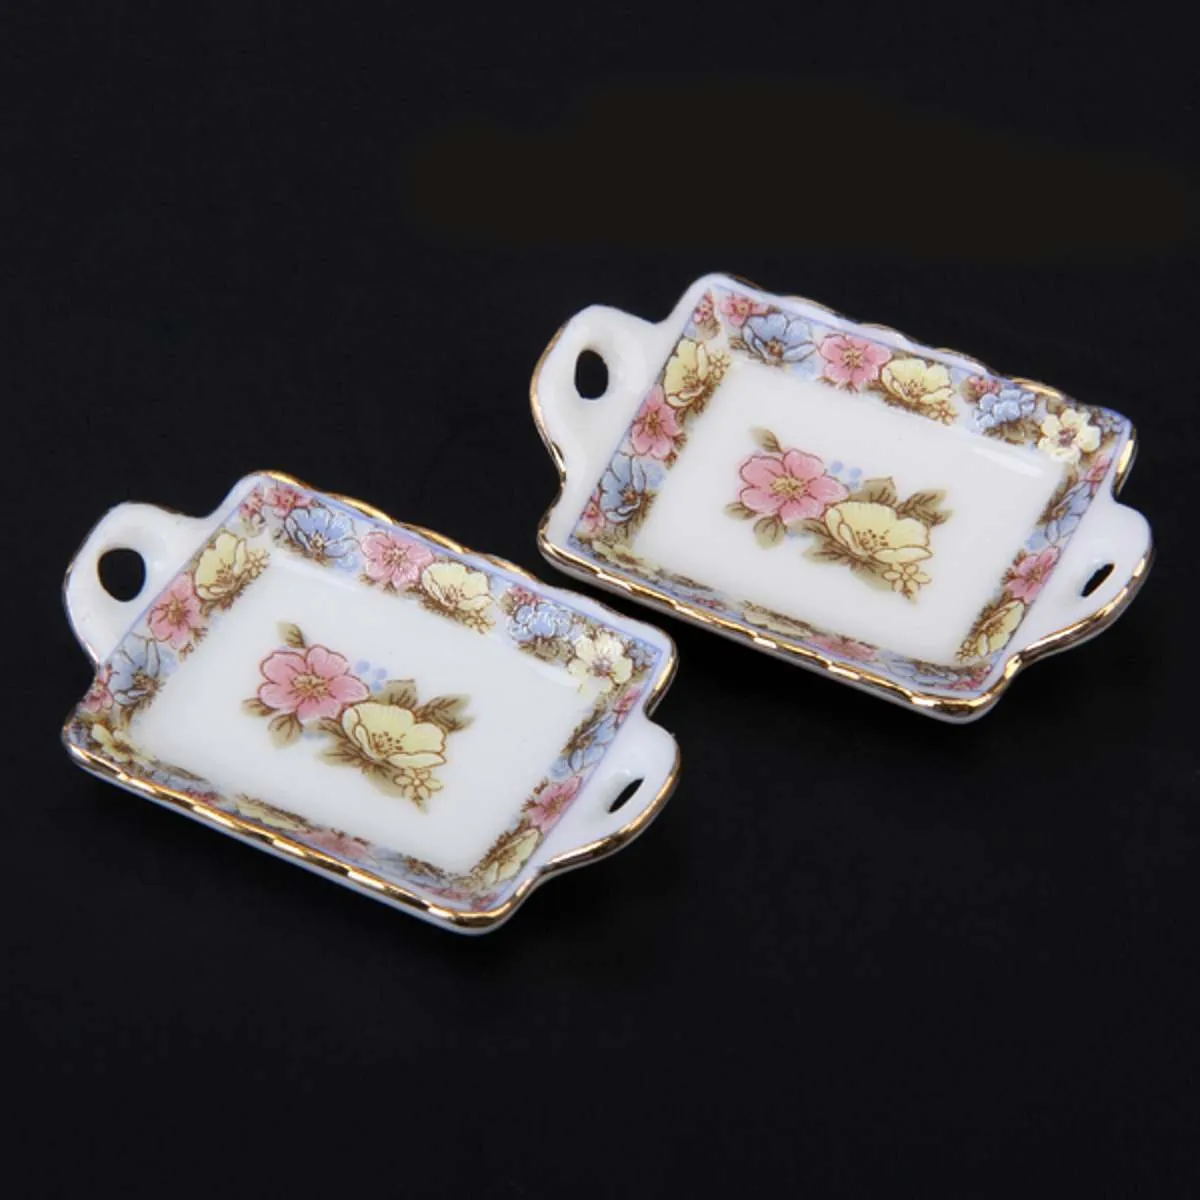 Dollhouse Miniature Dining Ware Porcelain Ta Set Plat tasse de bol meuble jouet Colore Colorful Floral Print Table décor Y5230580